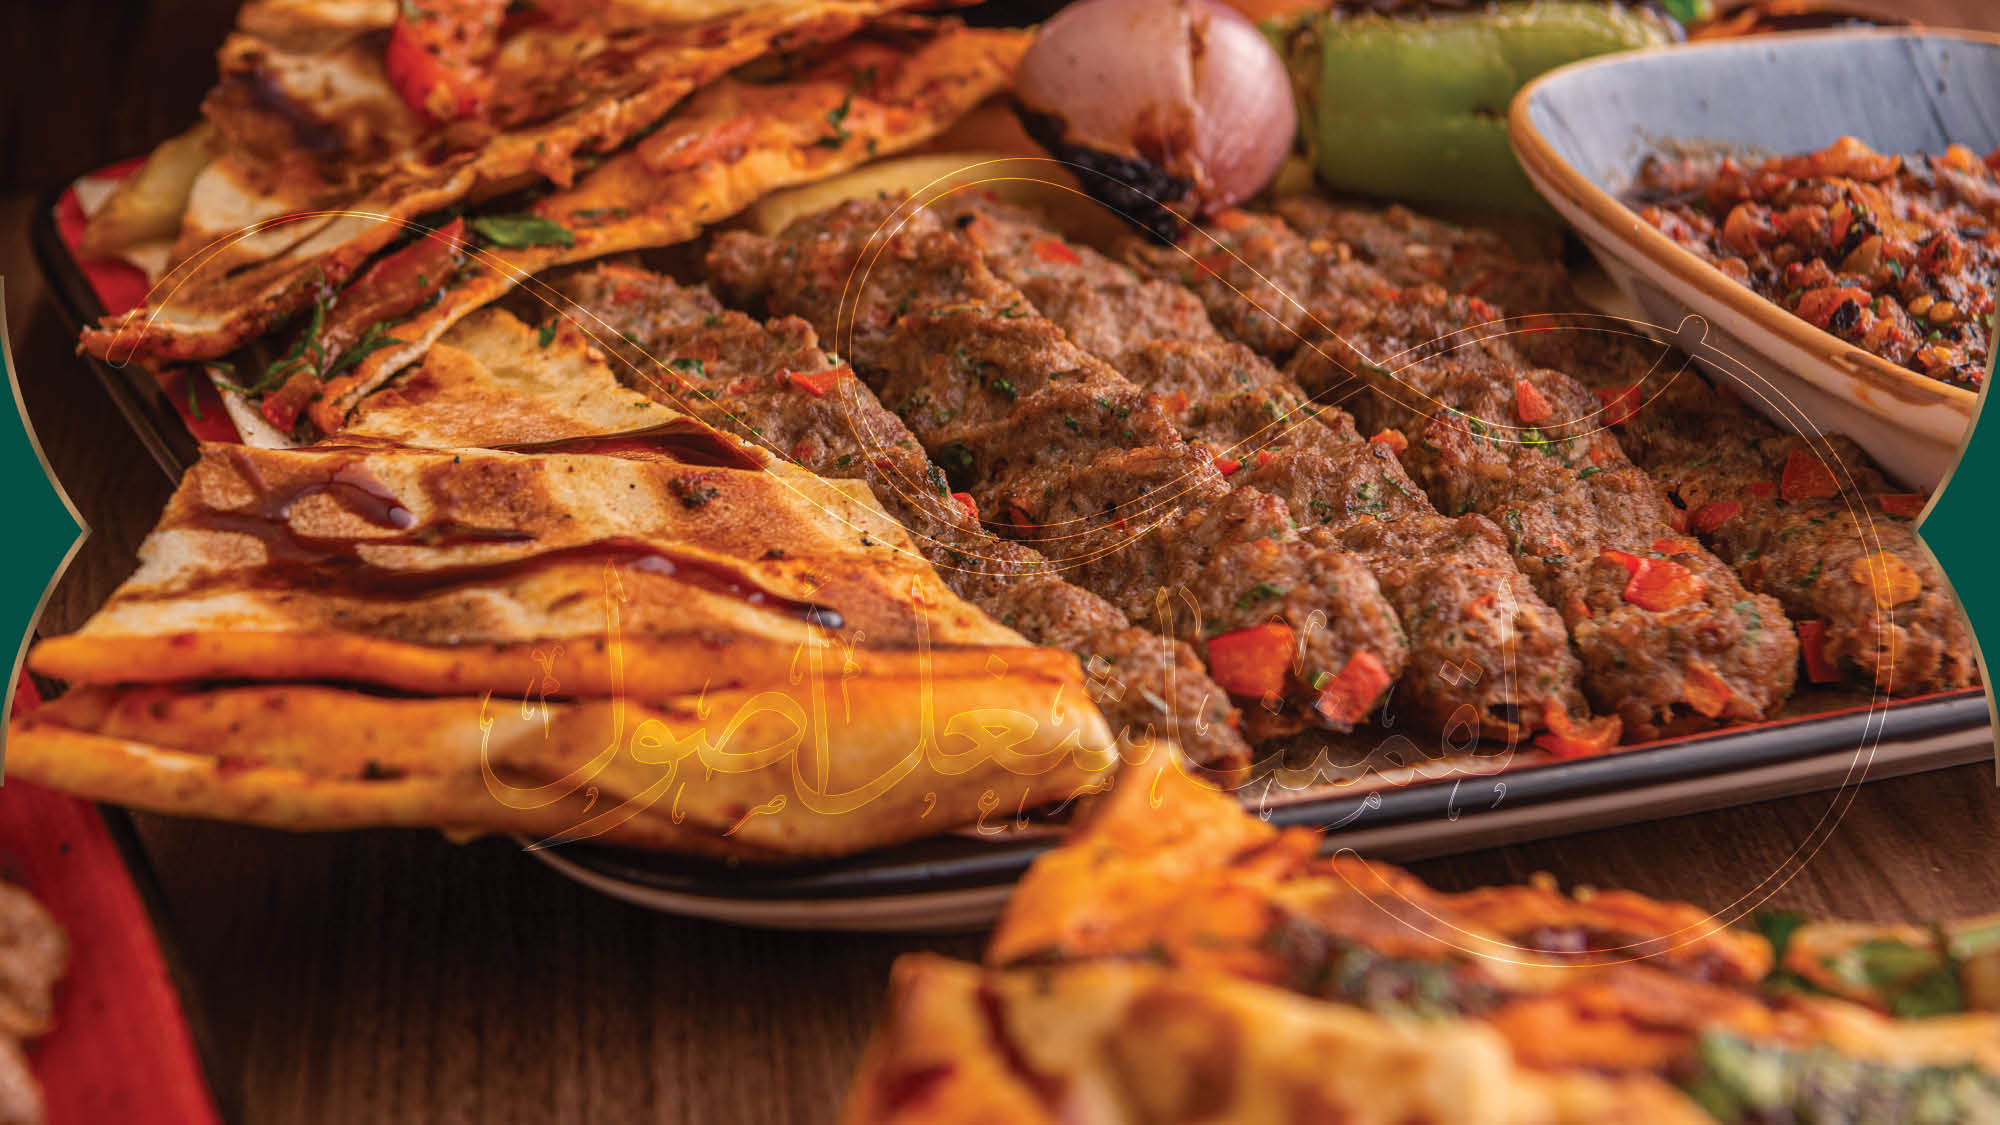 جولة مع الأطباق العربية الشهية: الحلويات العربية اللذيذة